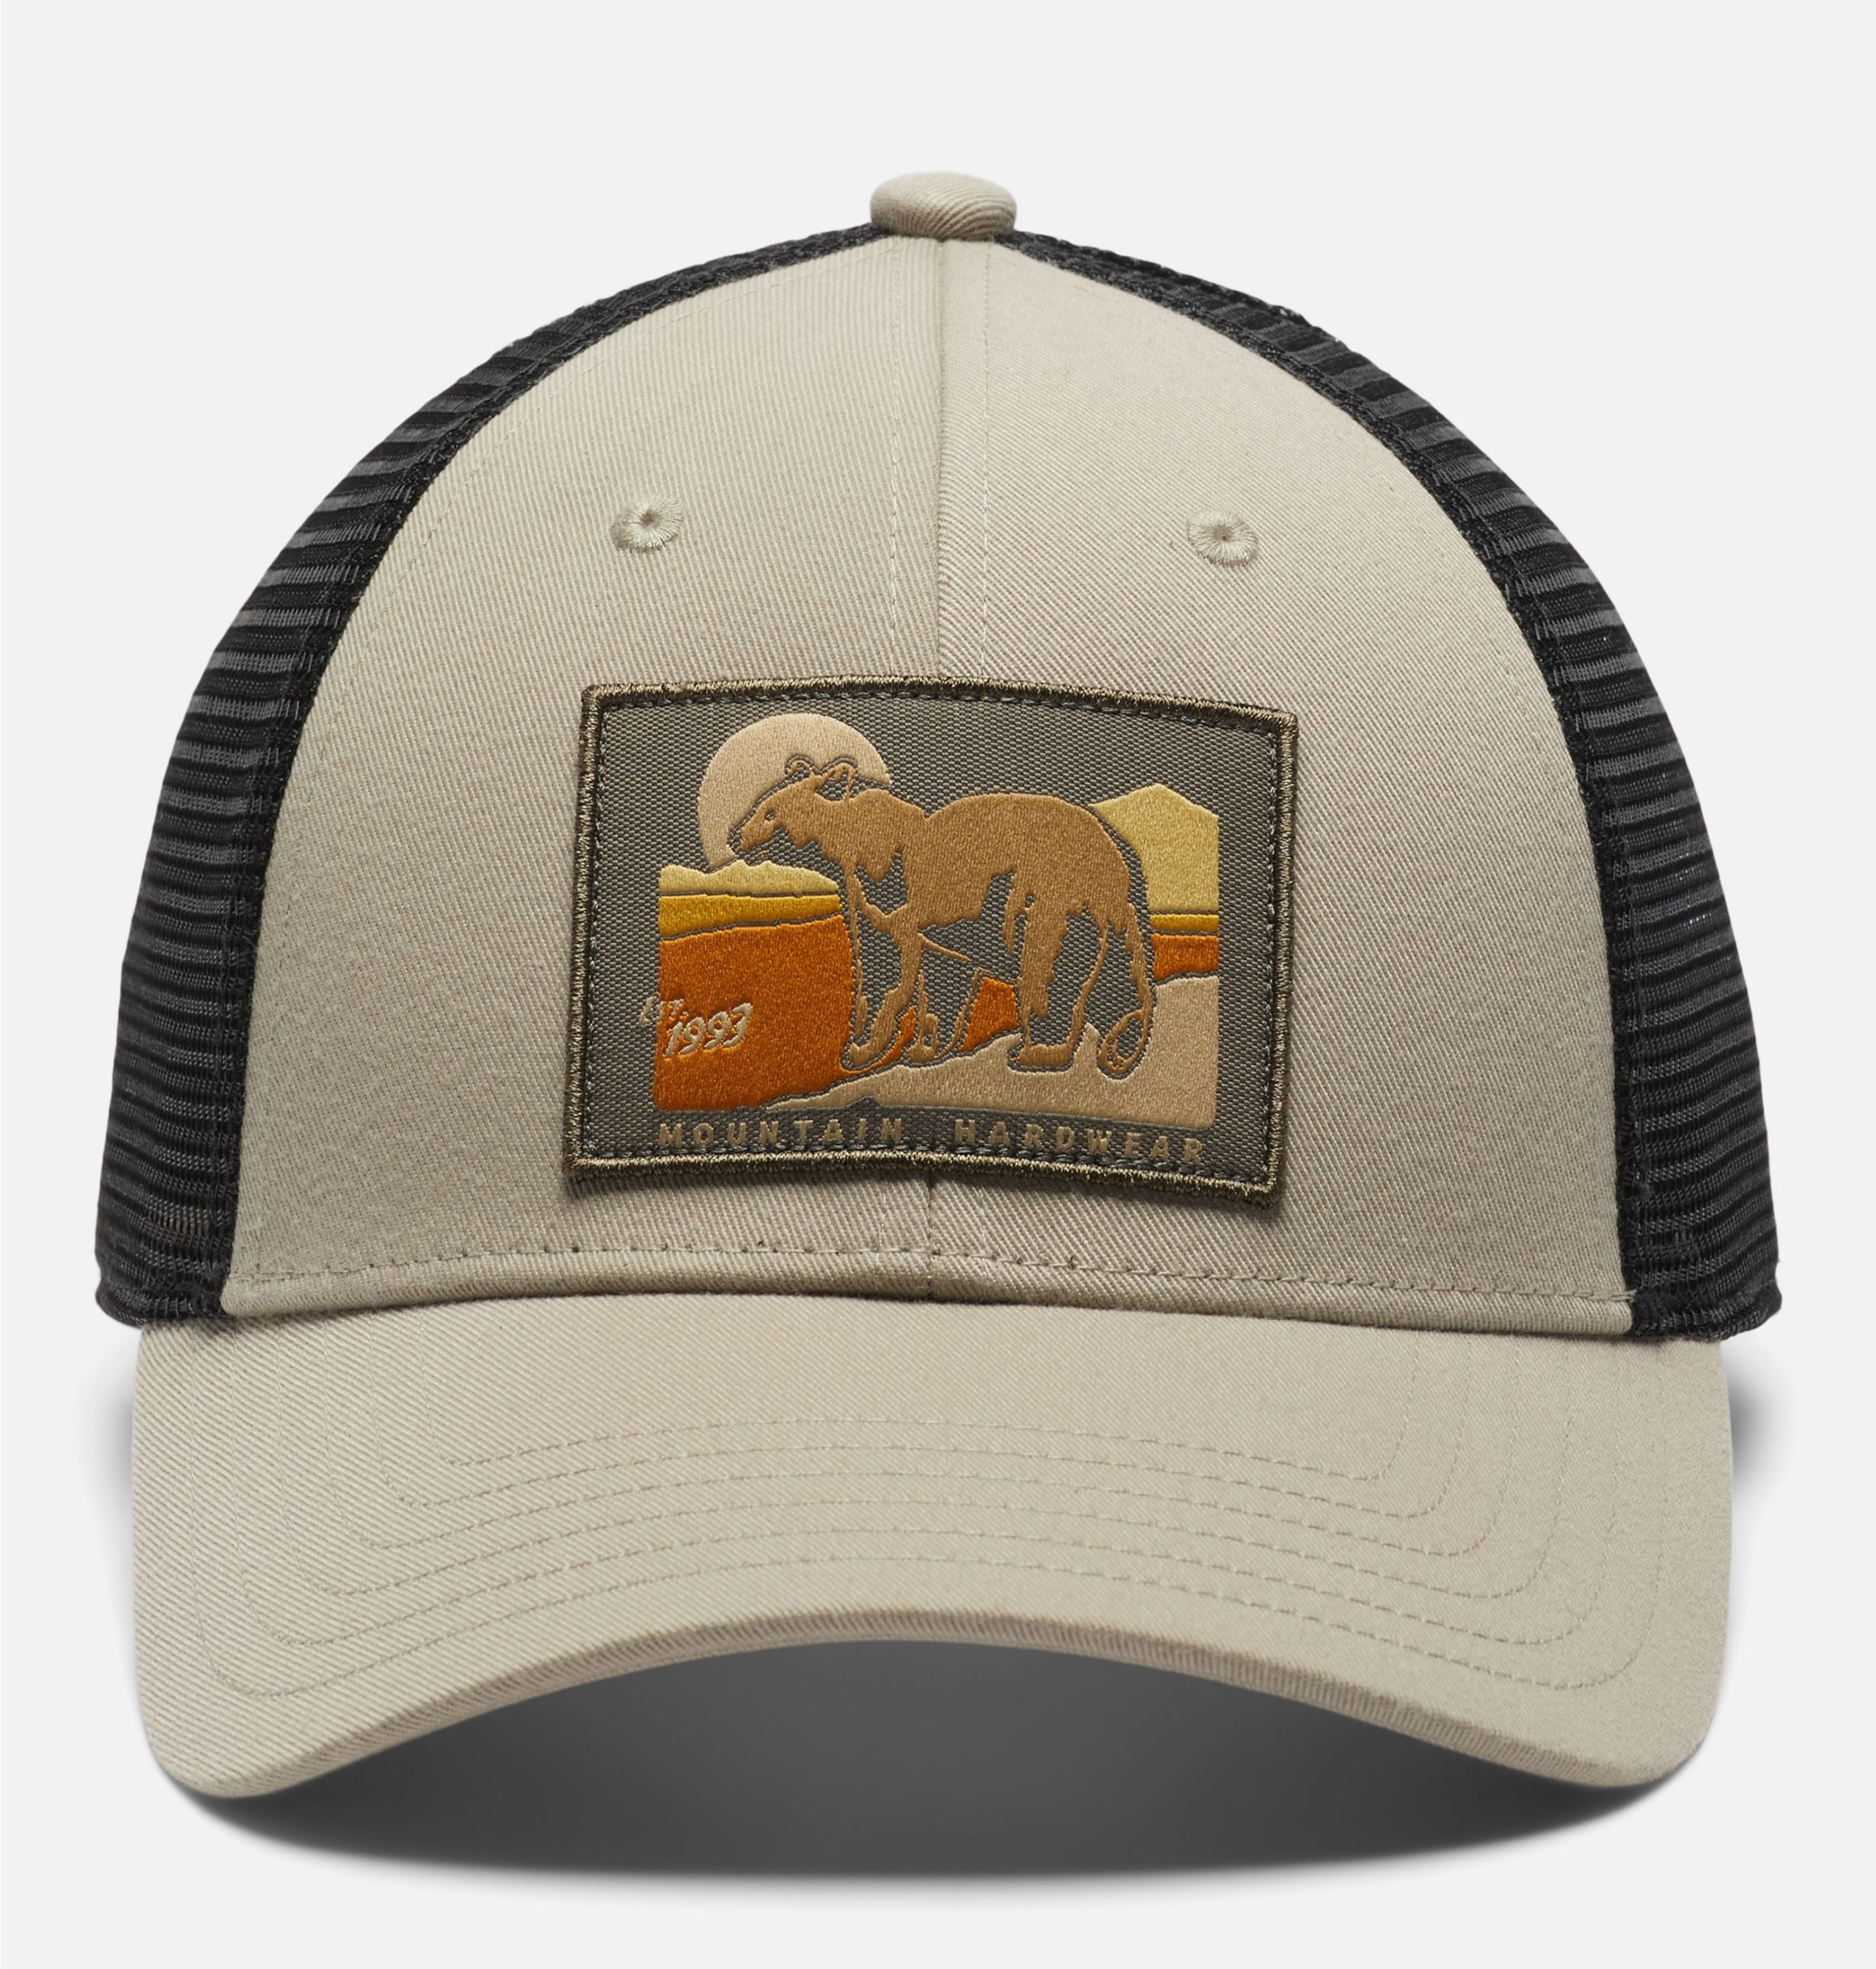 Bear Hat, Trucker Hat, Mesh Trucker Hat, Outdoor Hat, Mountain Hat